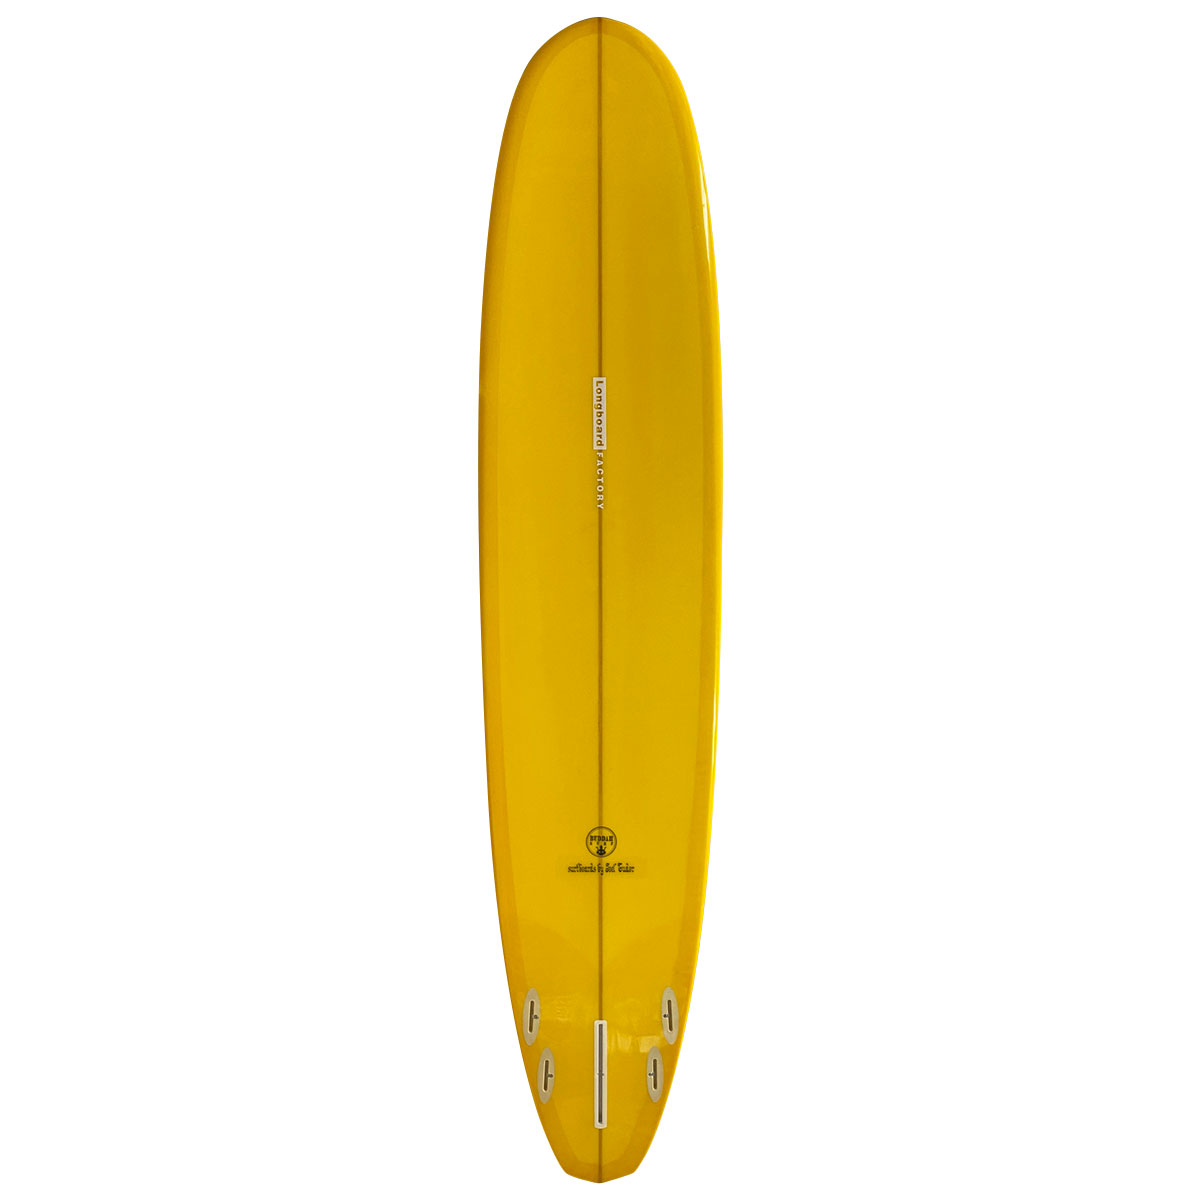 JOEL TUDOR SURFBOARD / DIAMOND TAIL shaped by BILL SHROSBREE 9`0